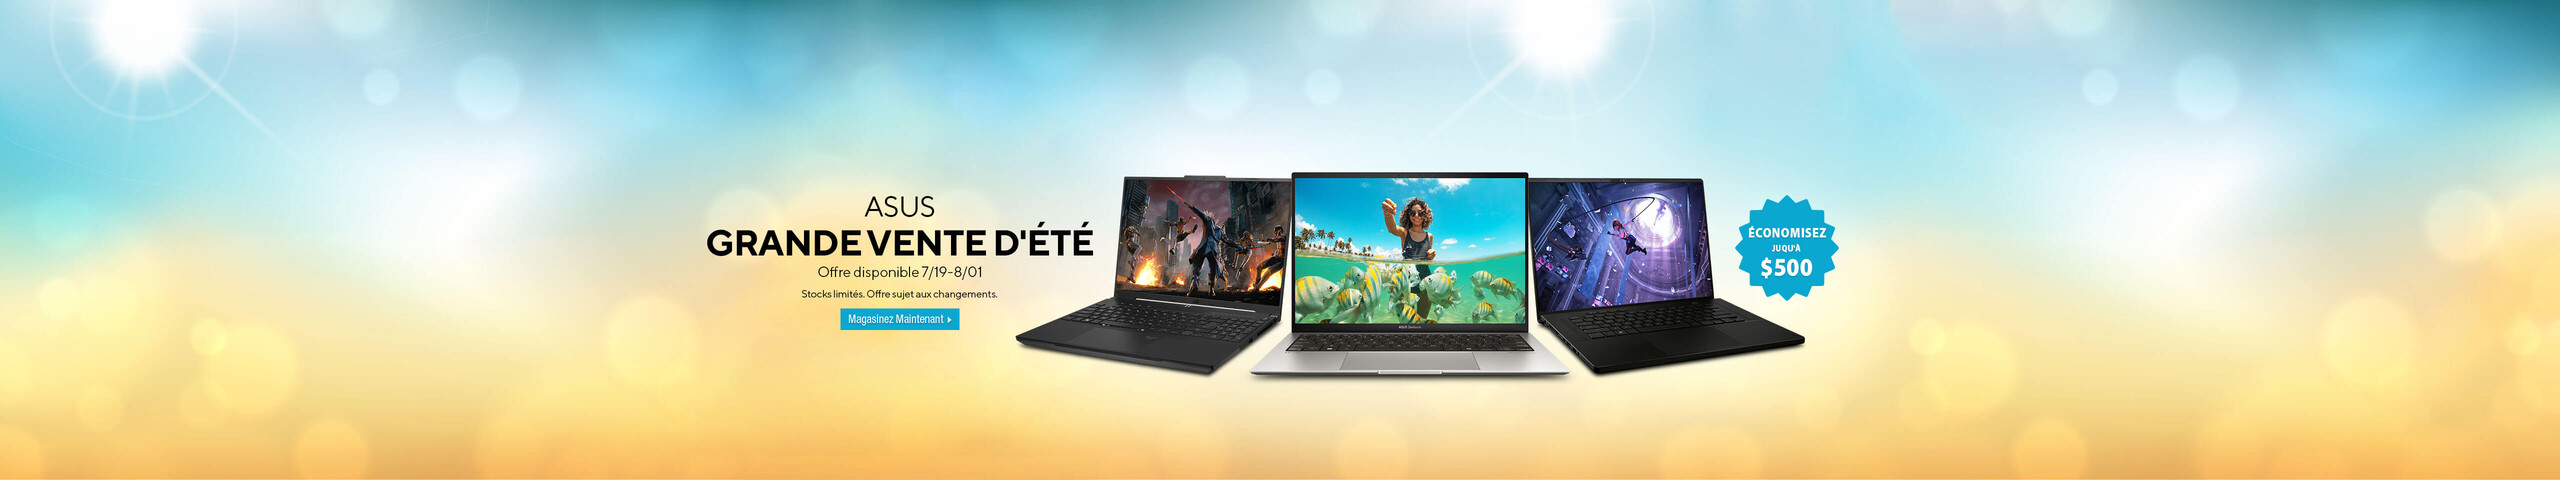 Image of 3 Laptops ASUS GRANDE VENTE D'ÉTÉ Offre disponible 7/19 - 8/01 Stocks limités. Offre sujet aux changements. Discount bubble: Économisez juqu'à $500 Magasinez Maintenant